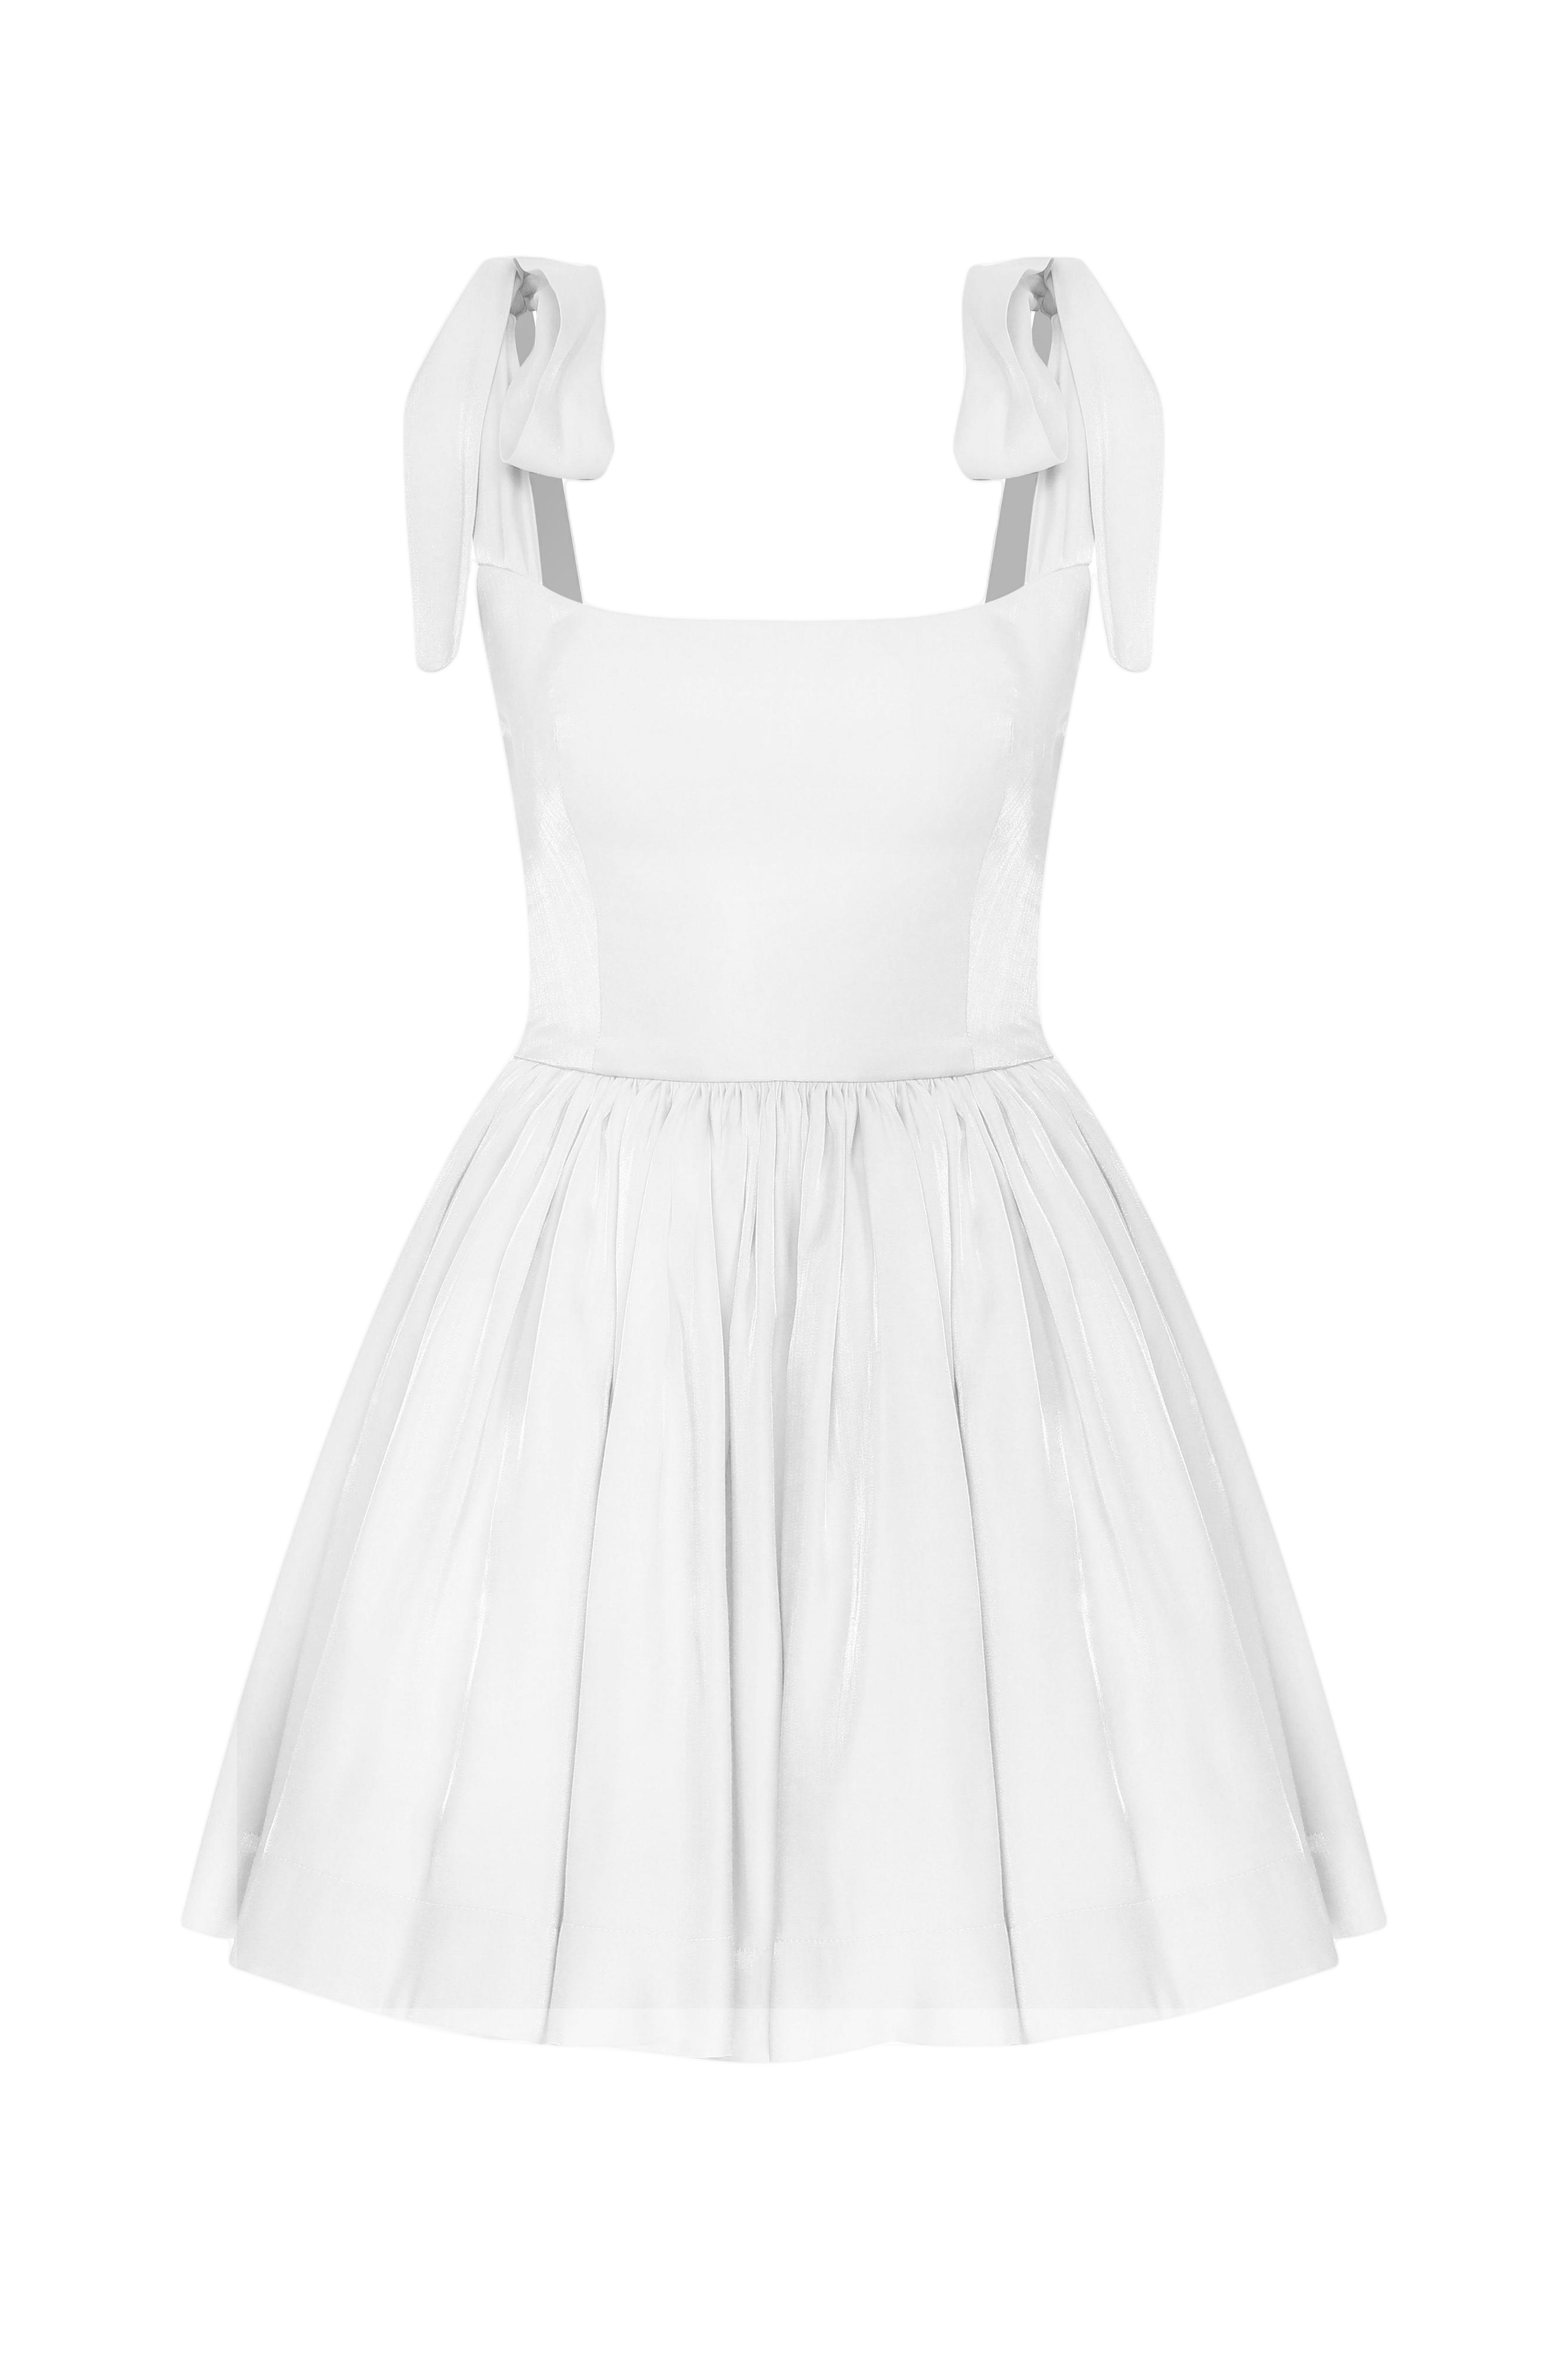 Nazli Ceren Sibby Dress In White